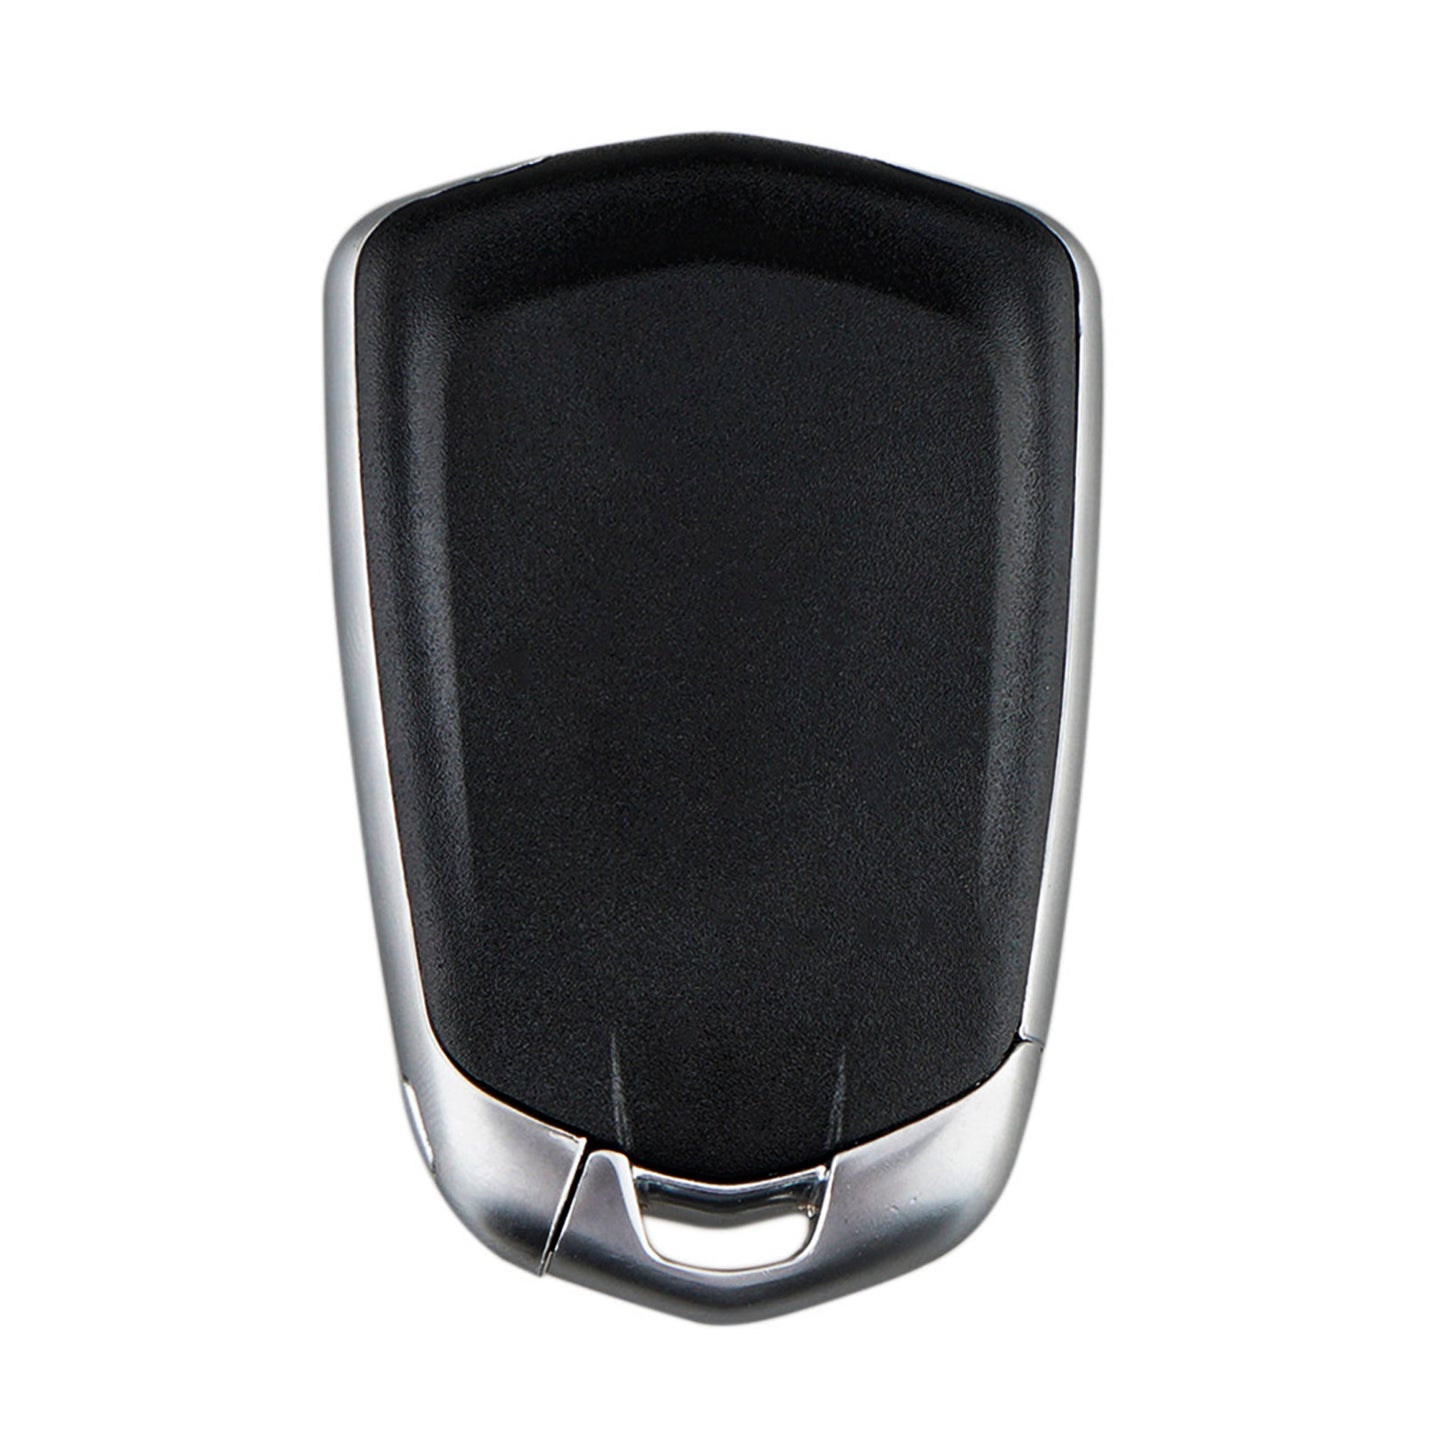 6 Buttons 433MHz Keyless Entry Fob Remote Car Key For 2015 - 2020 Cadillac Escalade FCC ID: HYQ2EB SKU : J941